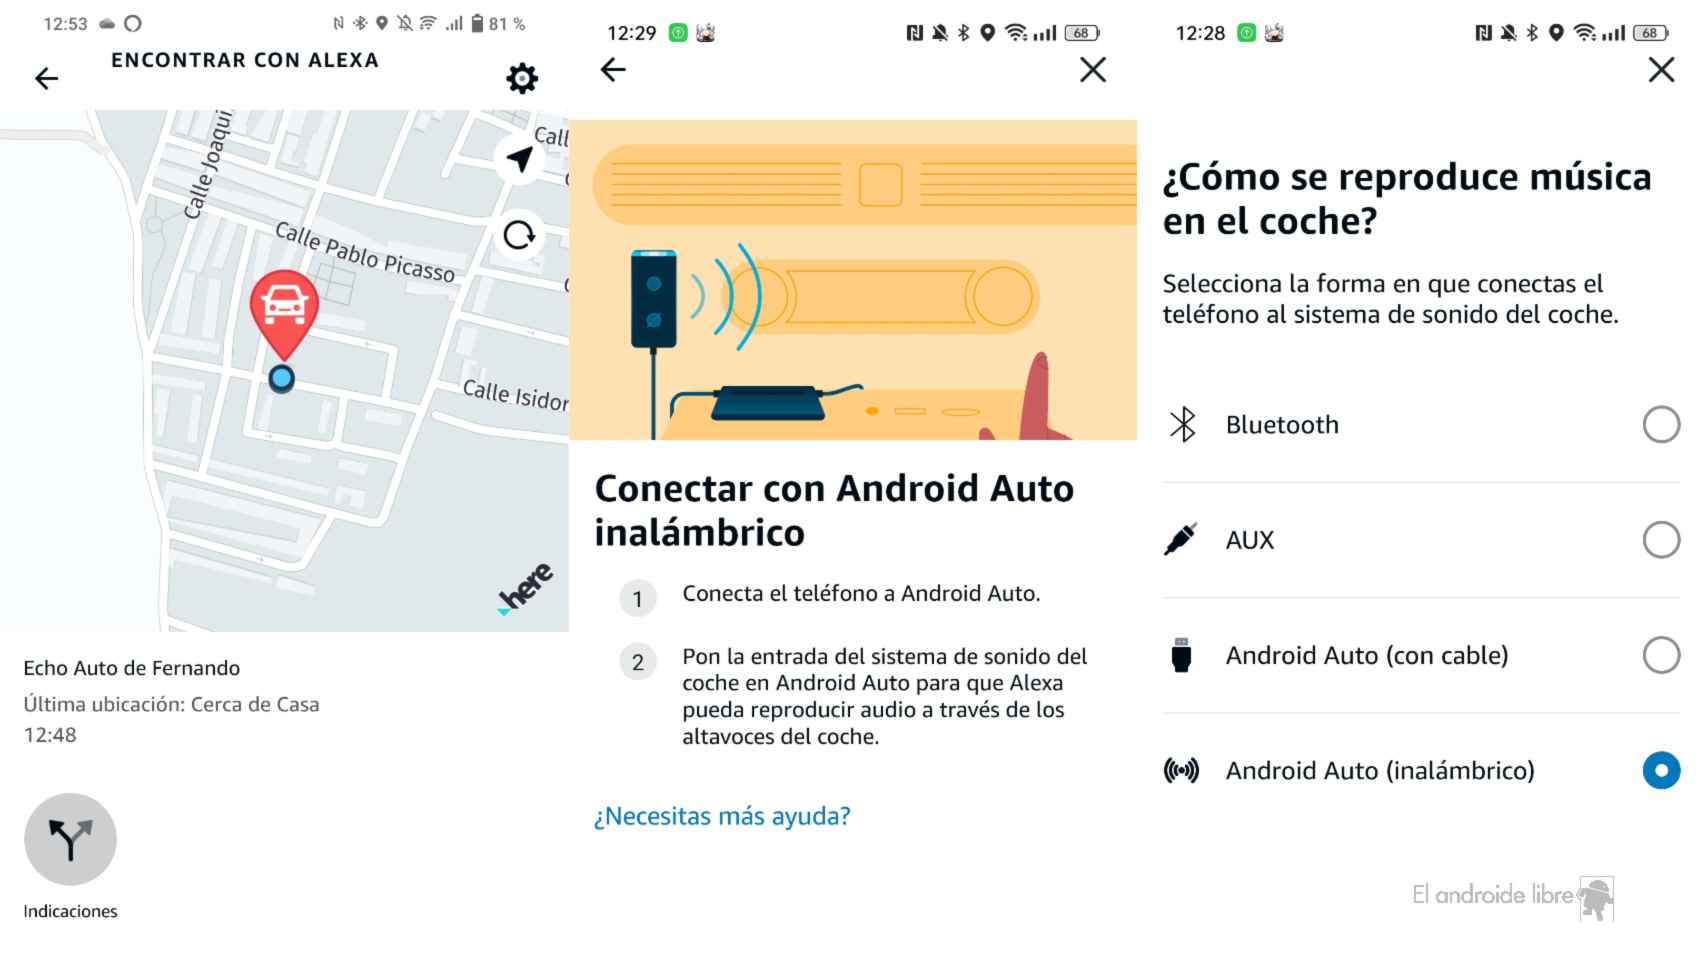 Amazon Echo Auto mobile interface